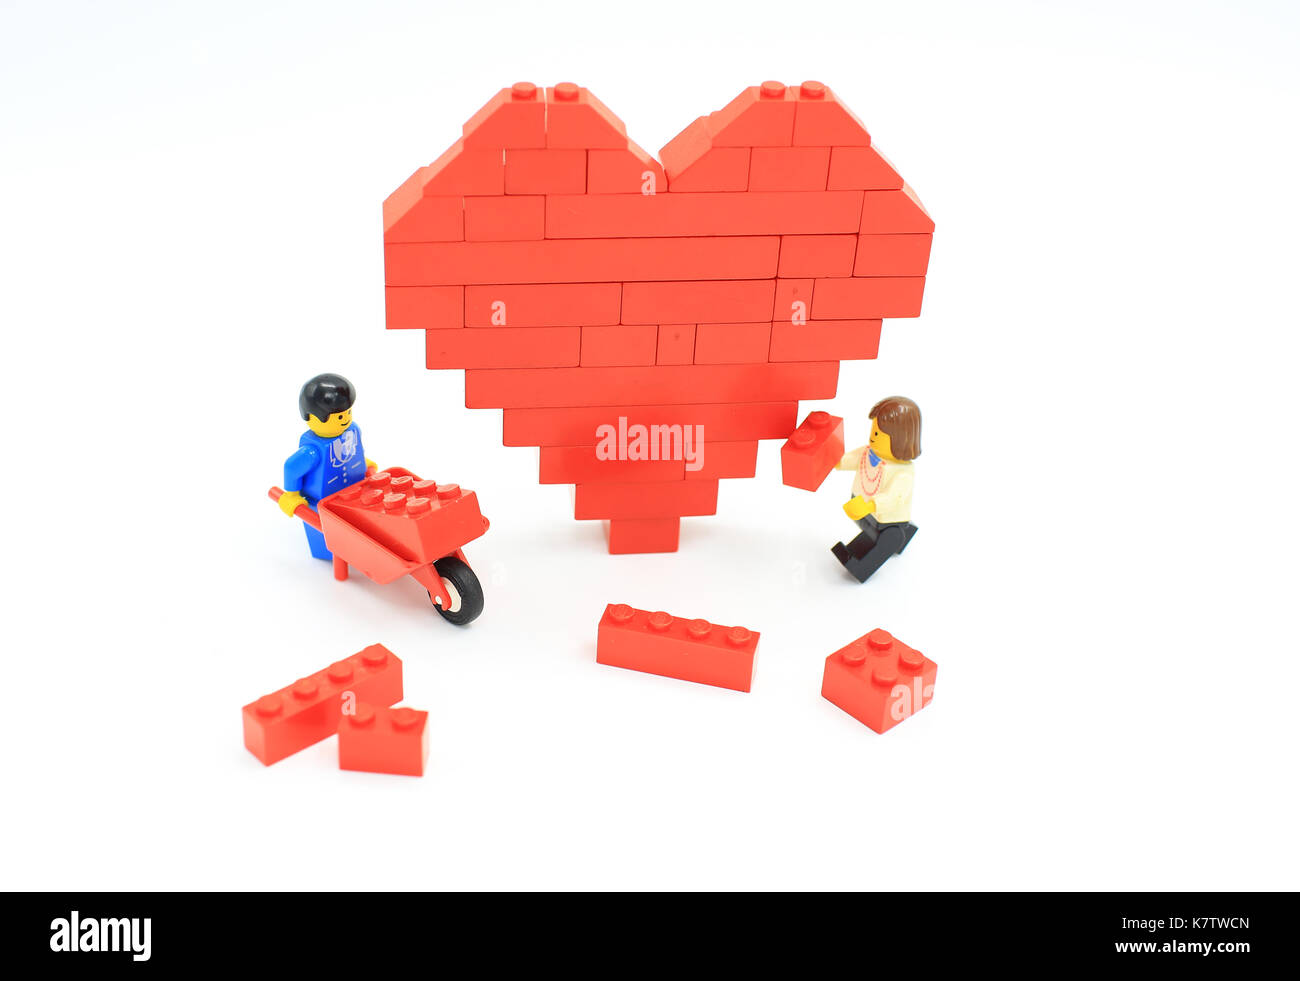 Lego heart immagini e fotografie stock ad alta risoluzione - Alamy